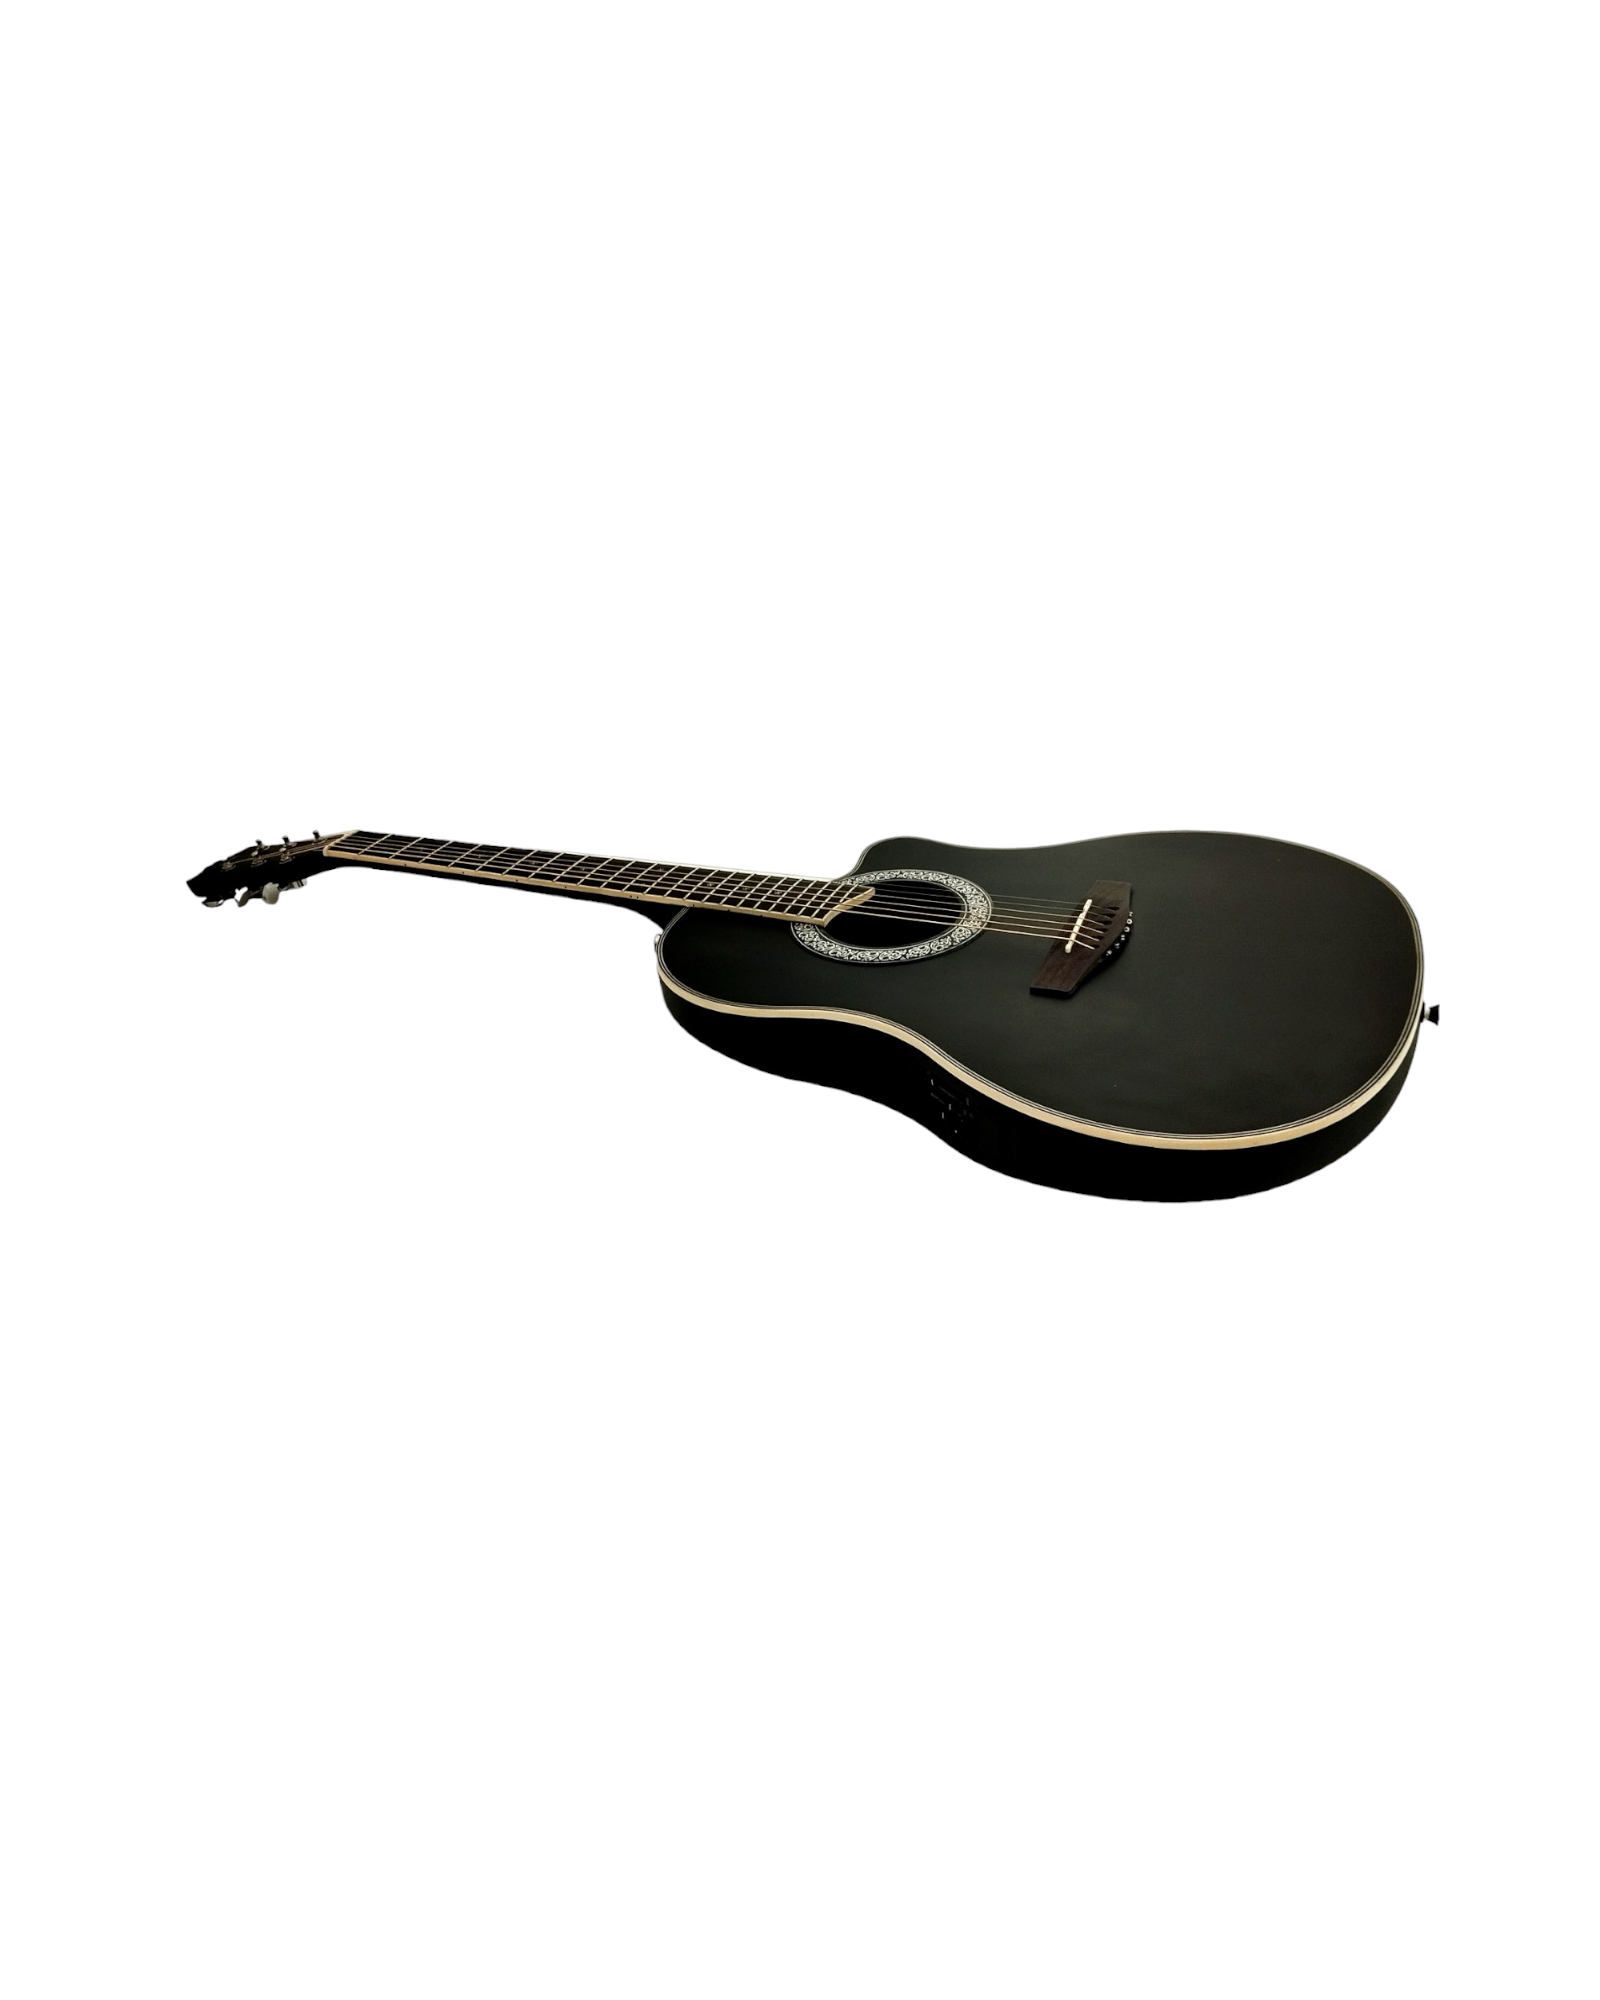 Acoustic Guitar 6 string Acoustic Guitar Black colour Guitar  hillsoundguitars